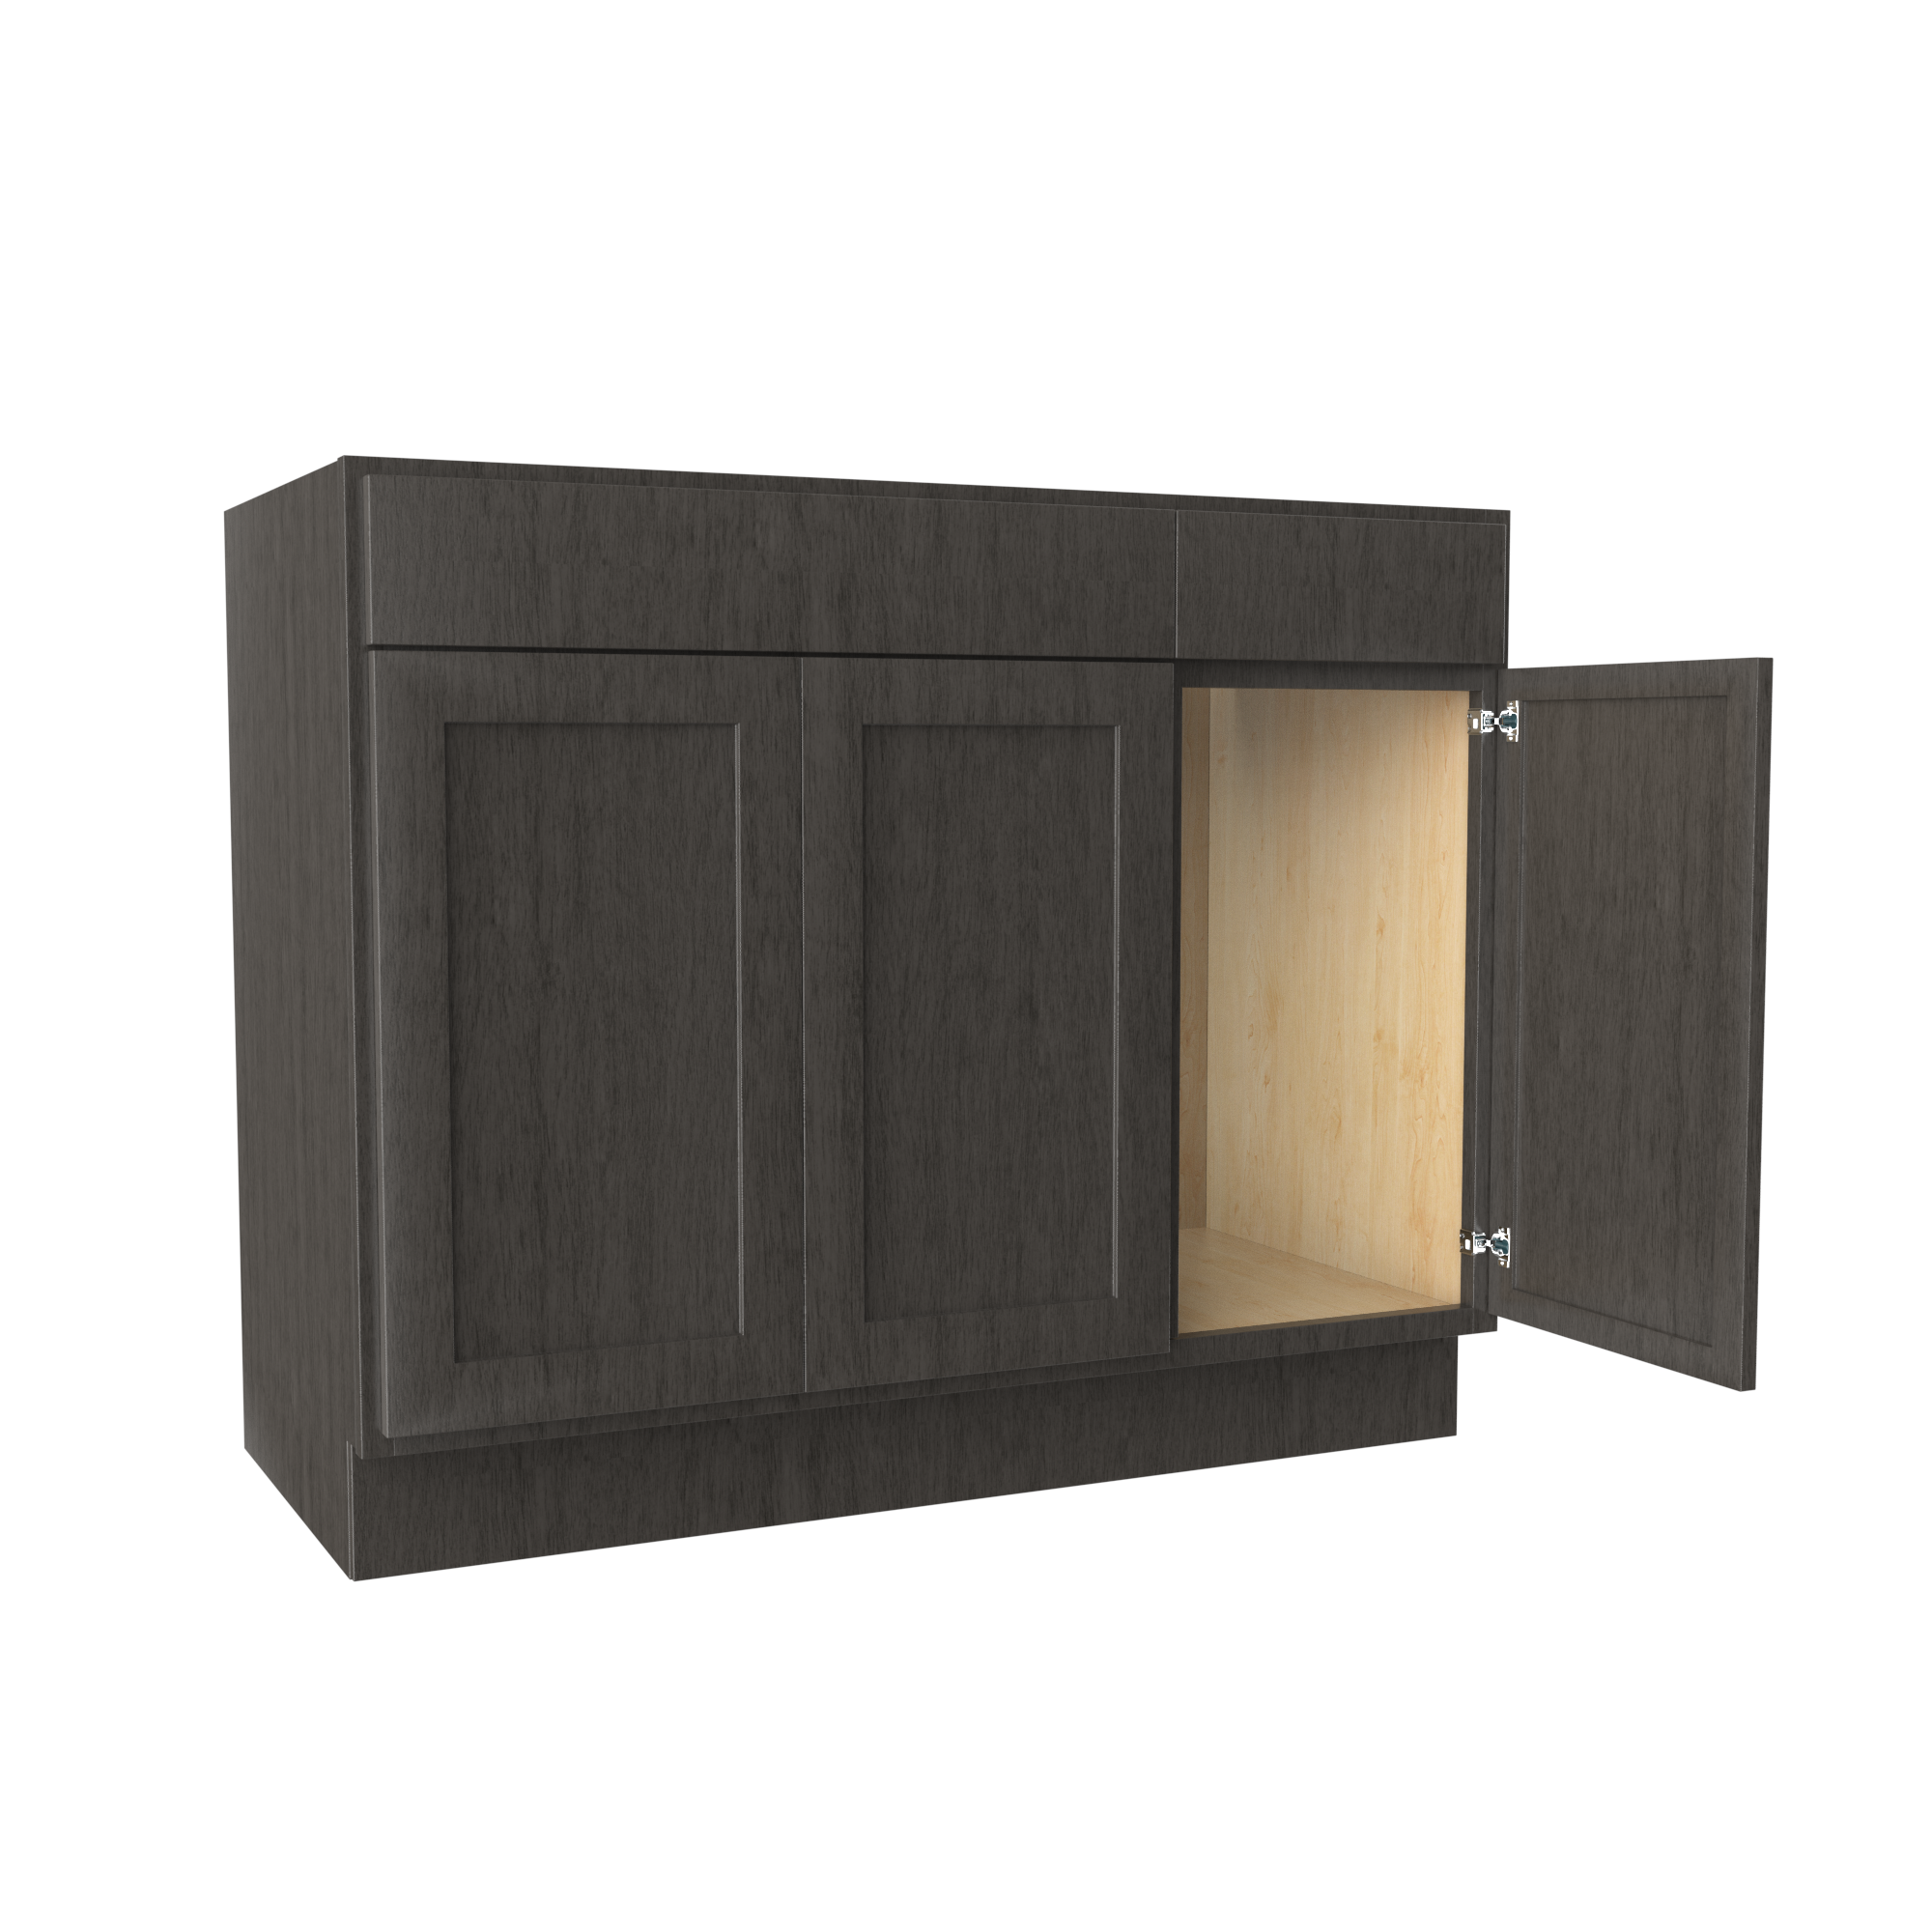 RTA Luxor Smoky Grey - 3 Door Vanity Base Cabinet | 42"W x 34.5"H x 21"D